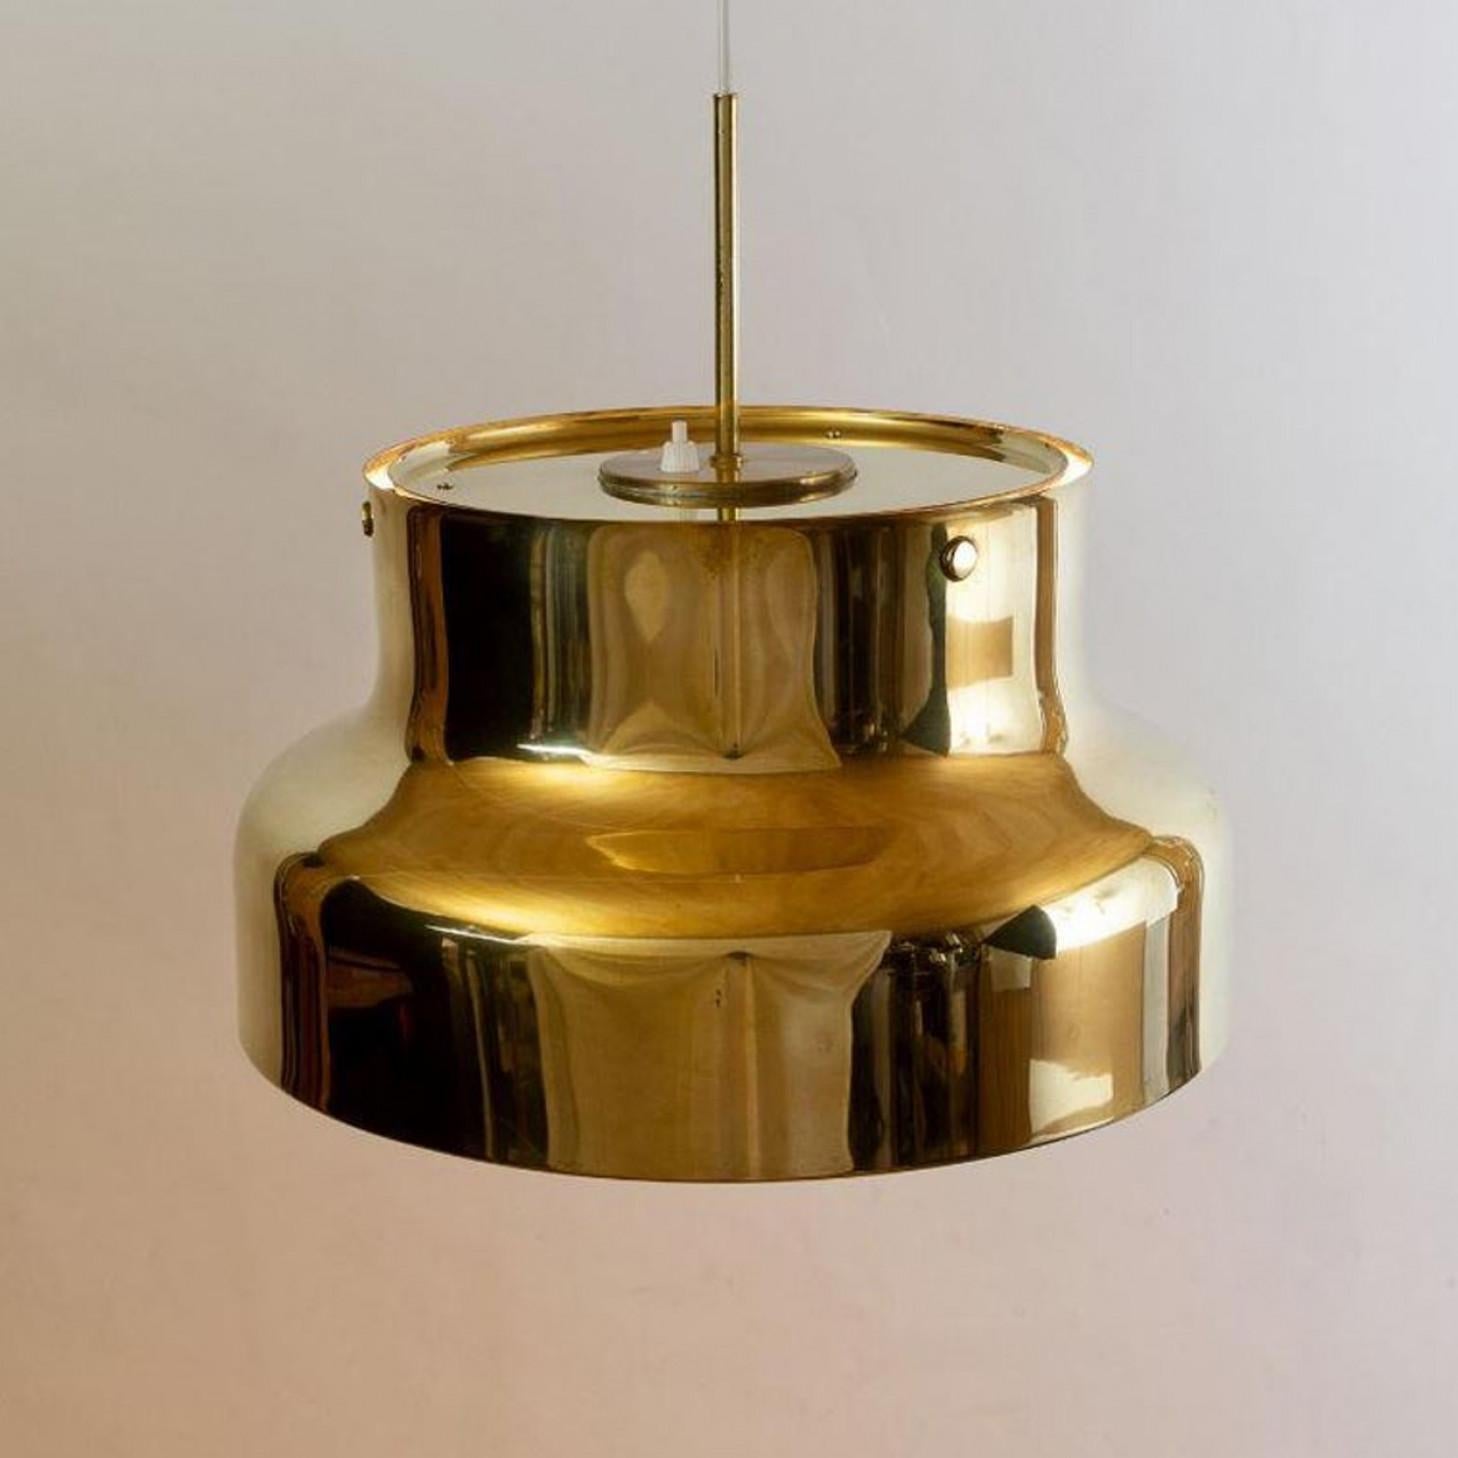 1 des 3 lampes Bumling pedant Produites en Suède par Ateljé Lyktan, 1960s Design/One. Diamètre de 15,8 pouces/40 cm. Complet avec diffuseur en acrylique.

En très bon état vintage. Pas de légère patine. Le prix indiqué est celui d'une (1) lampe.